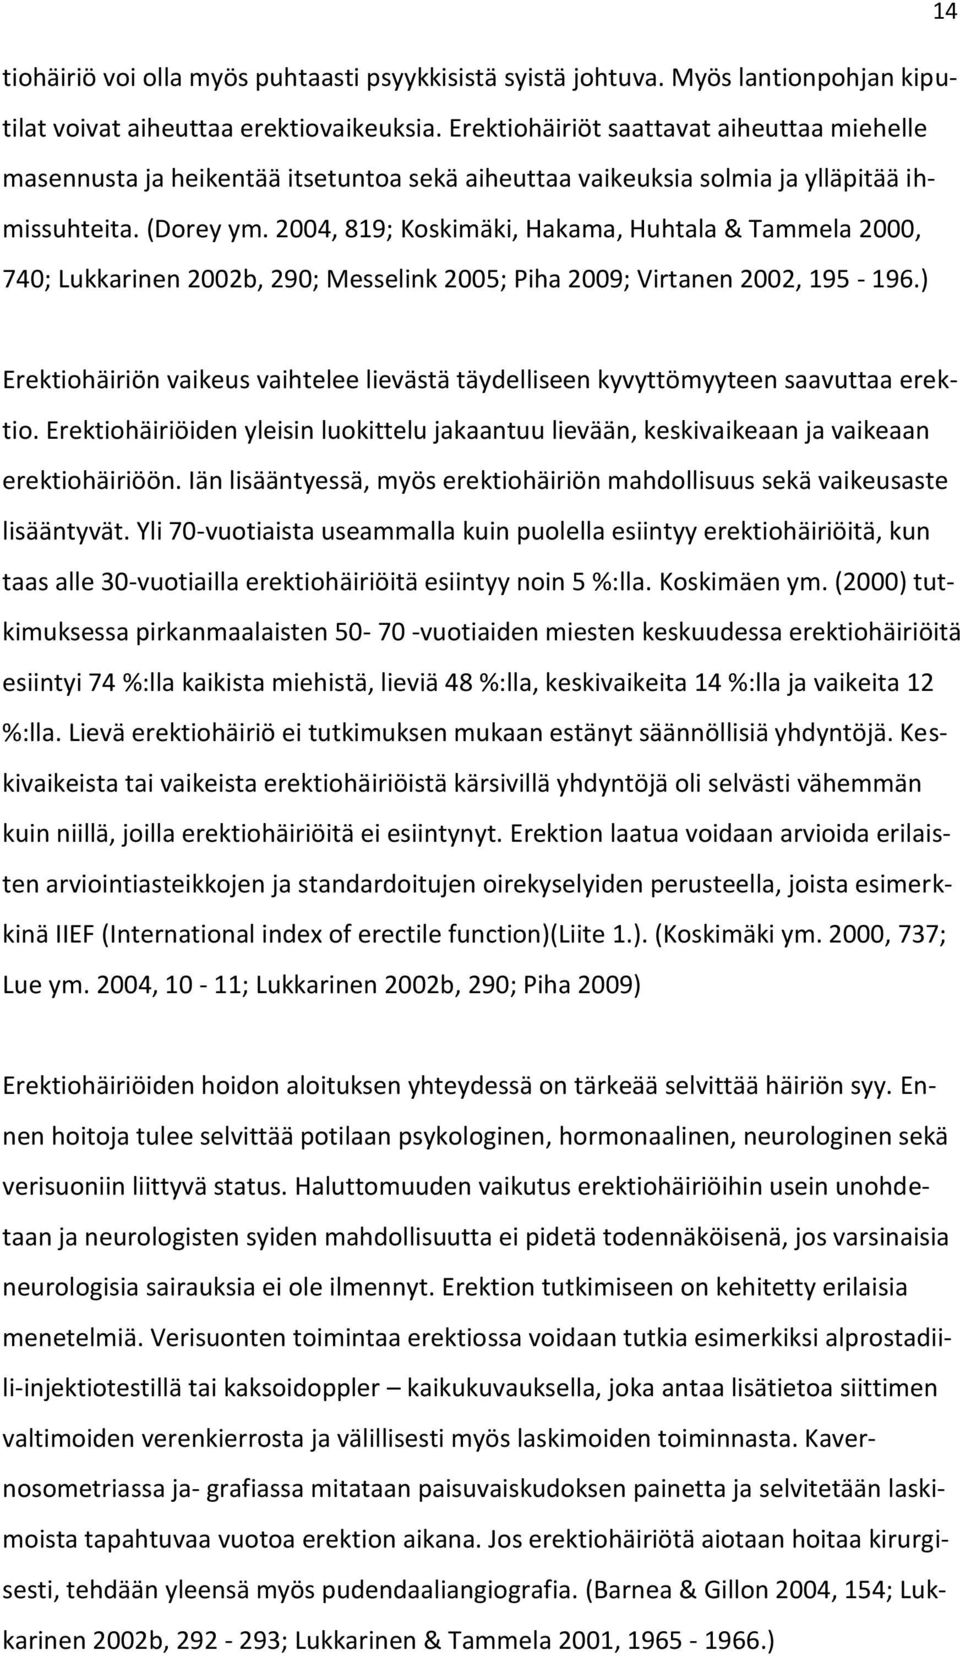 2004, 819; Koskimäki, Hakama, Huhtala & Tammela 2000, 740; Lukkarinen 2002b, 290; Messelink 2005; Piha 2009; Virtanen 2002, 195-196.